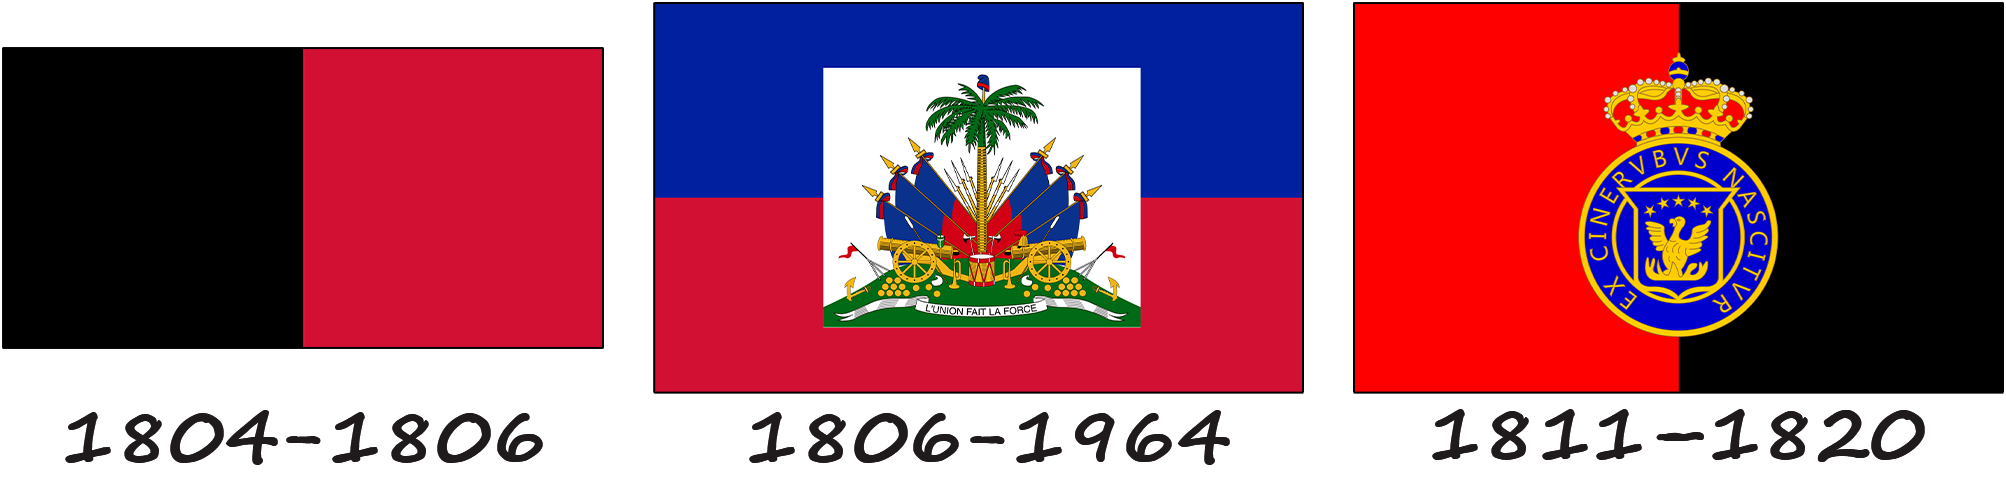 Historia de la bandera de Haití